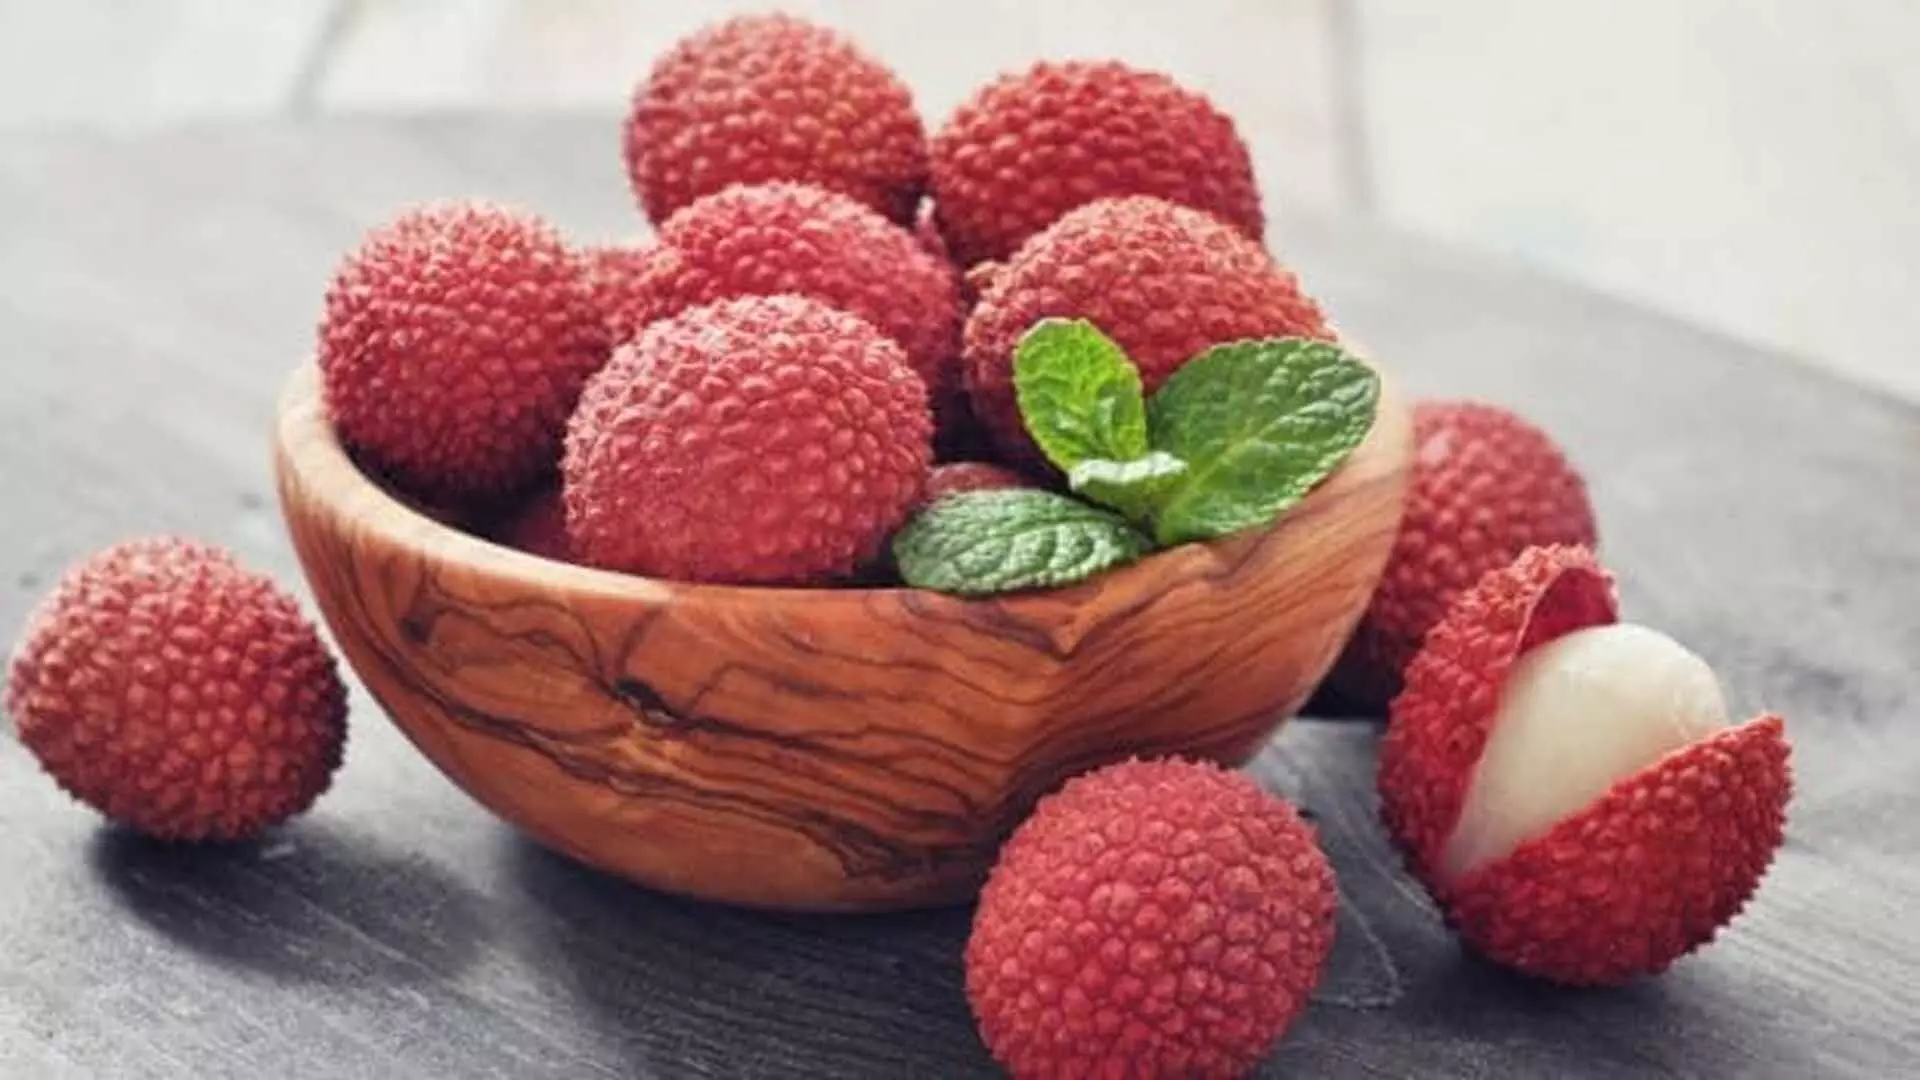 लीची के स्वास्थ्य लाभ: 5 कारण क्यों आपको यह मौसमी फल खाना चाहिए